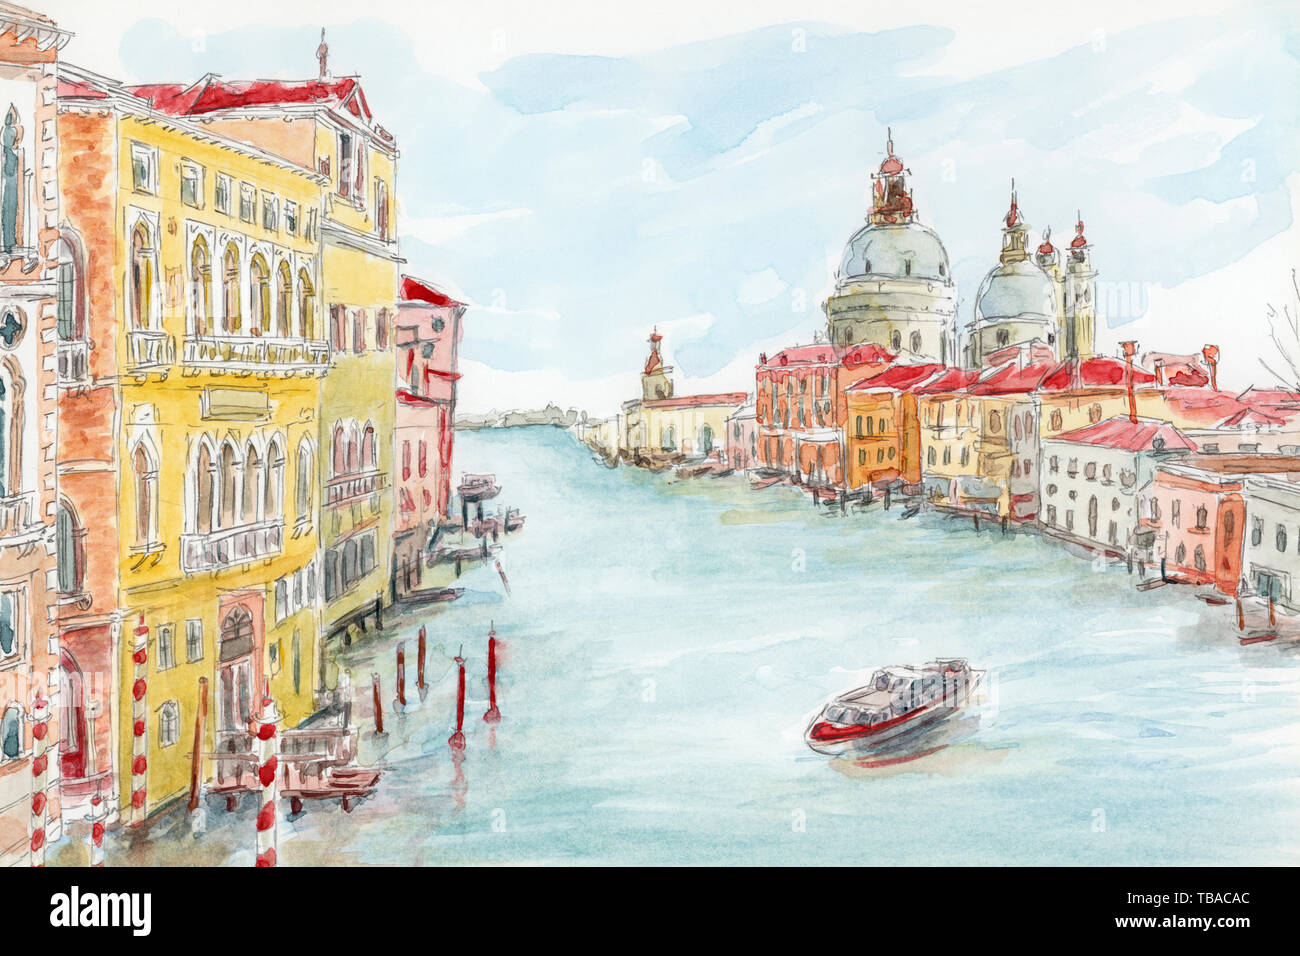 Le Grand Canal. Venise, Italie. Crayon et aquarelle sur papier. Banque D'Images